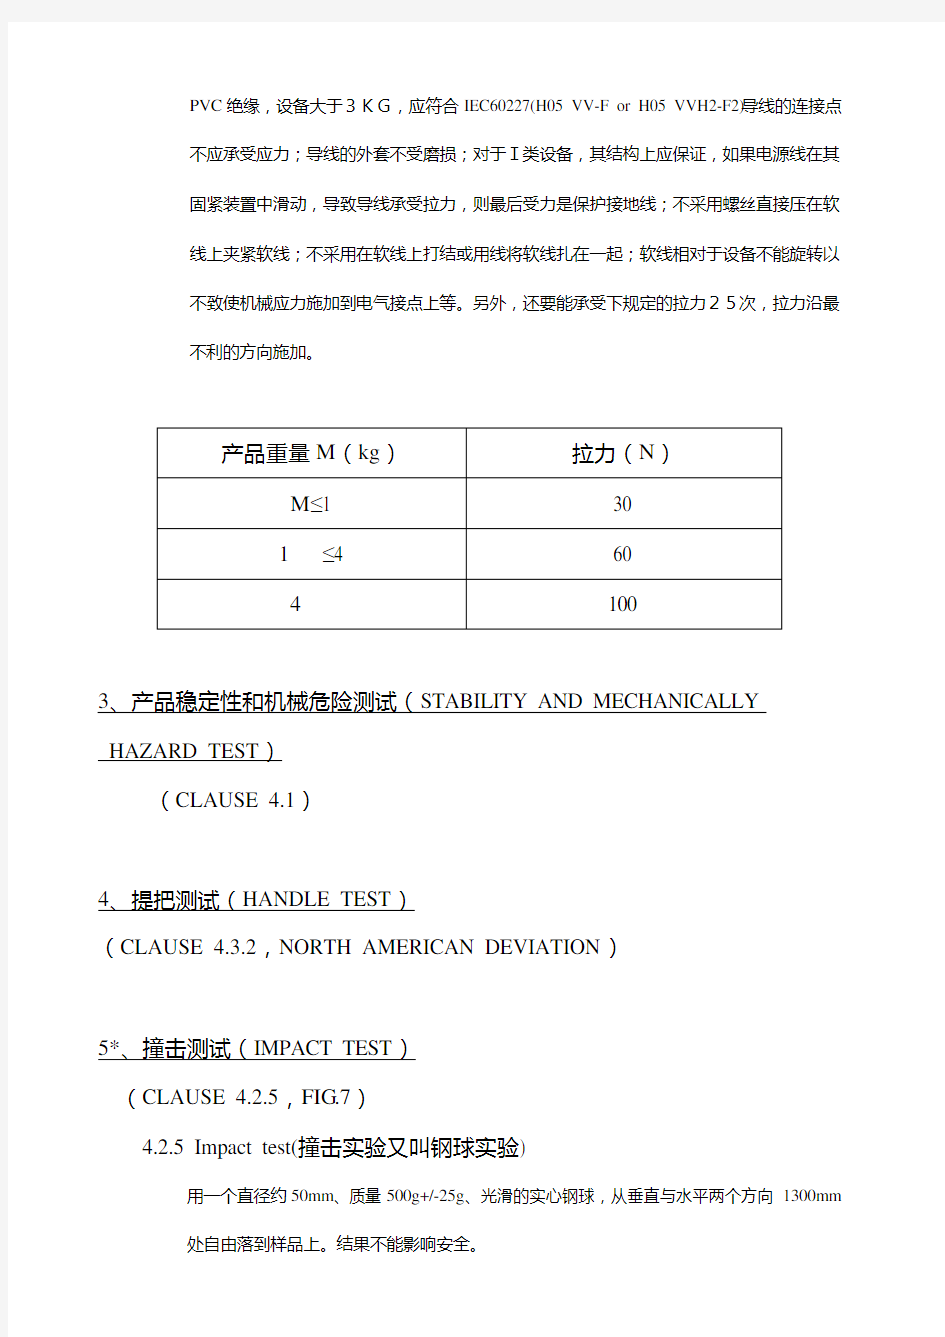 IEC60950中文版